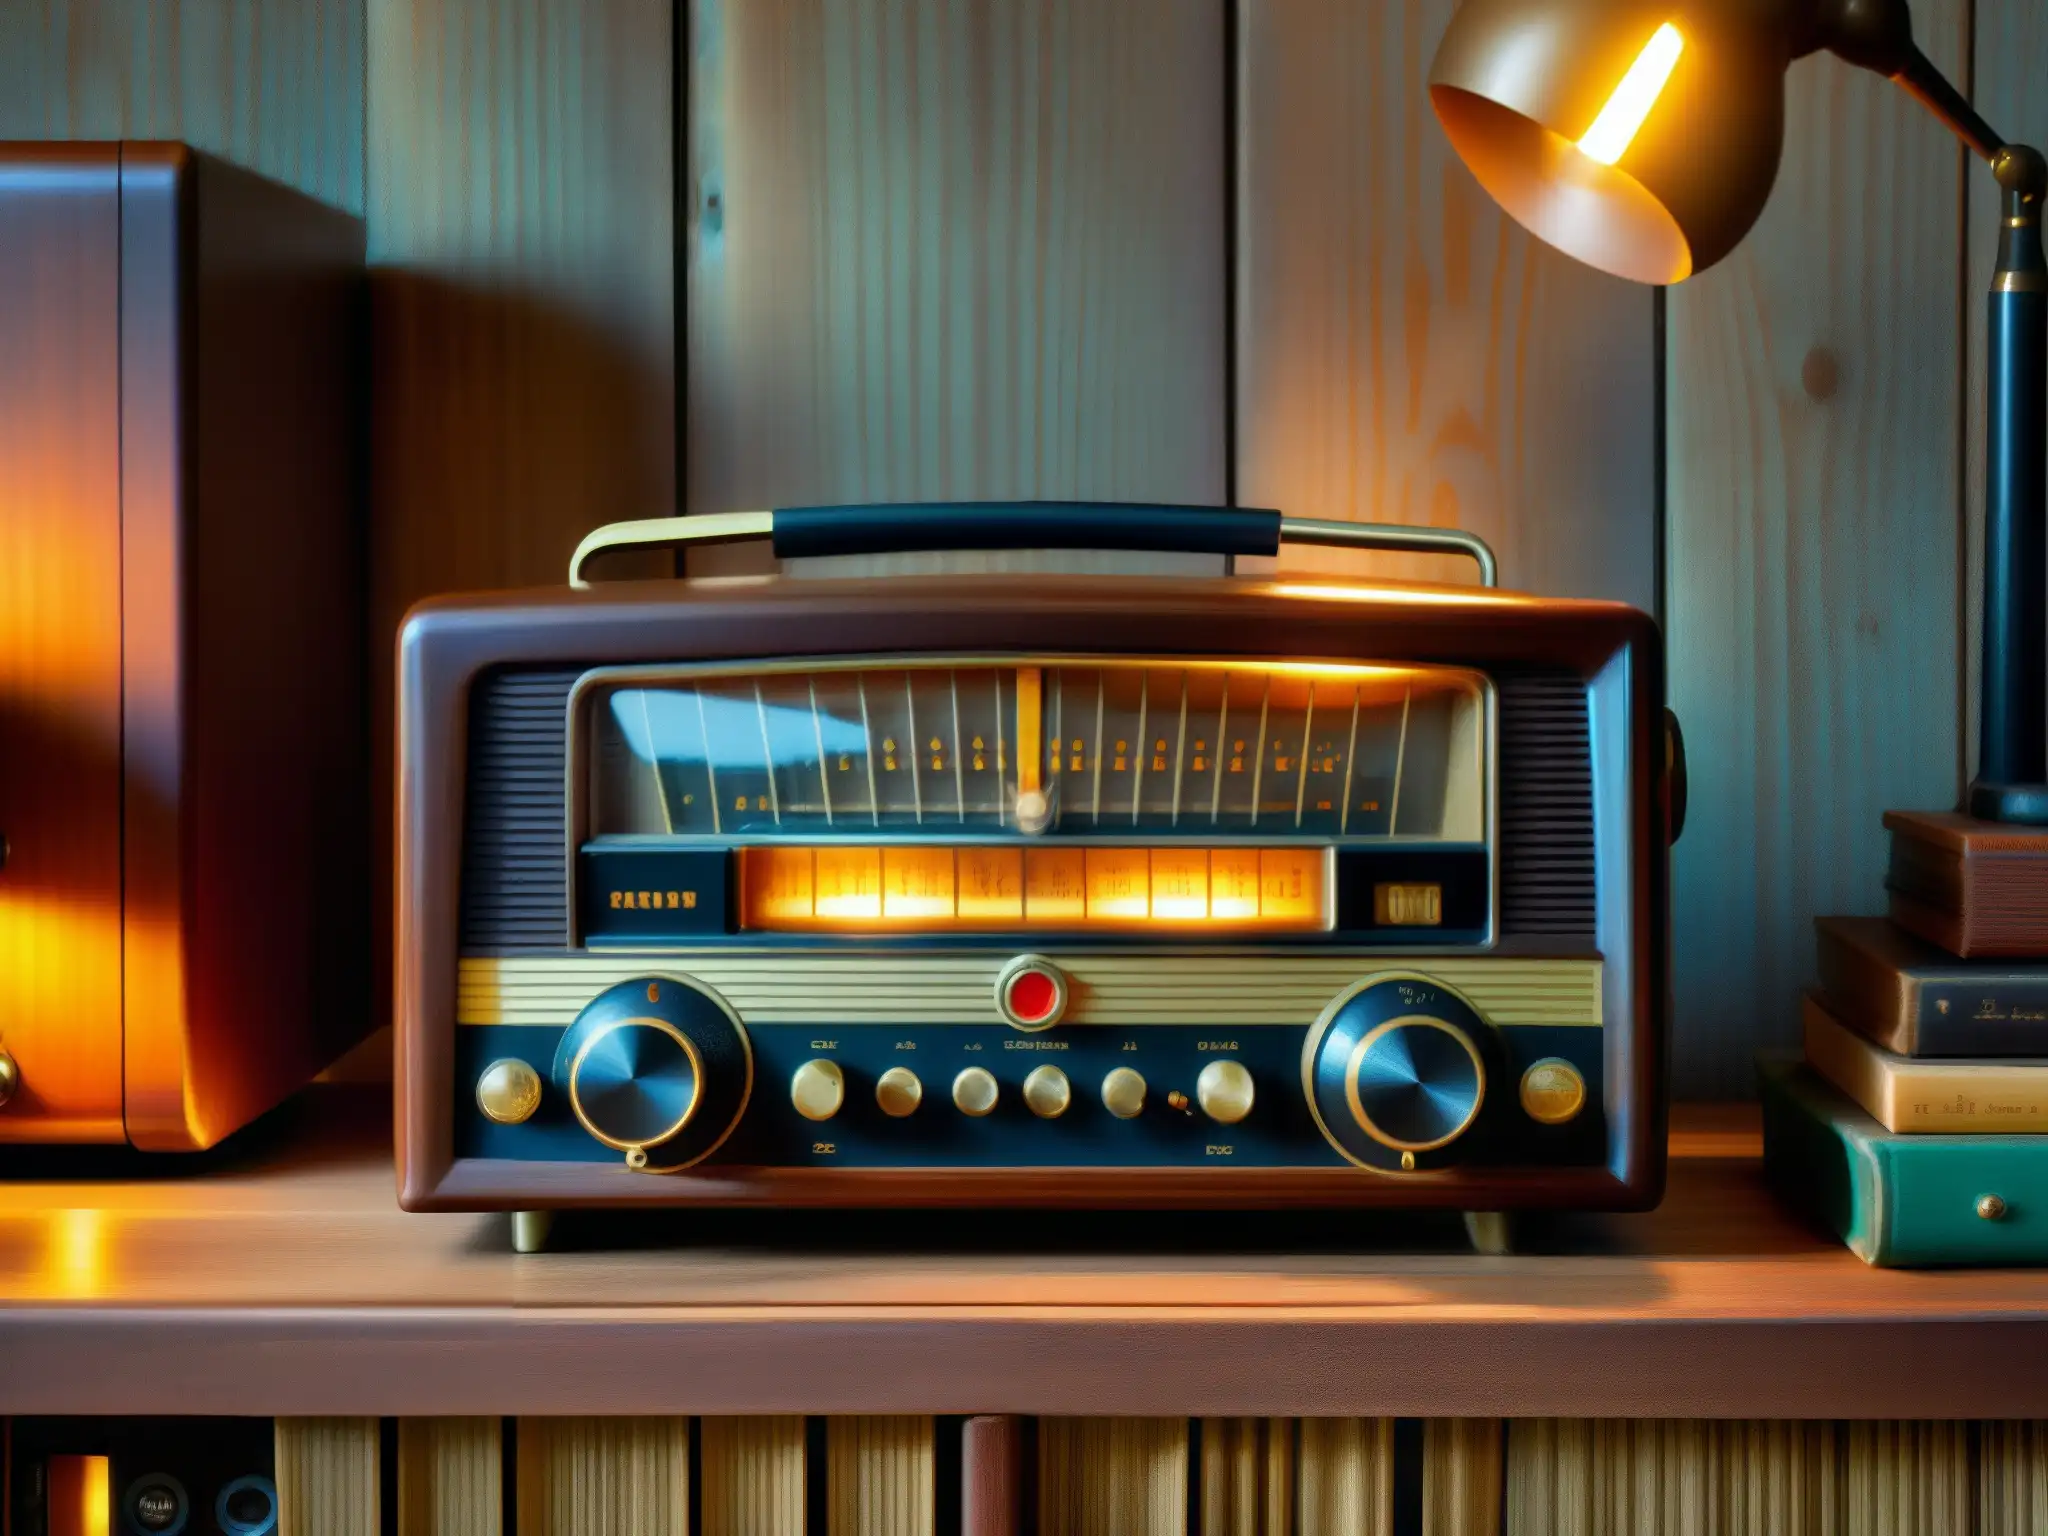 Una radio vintage rodeada de vinilos, auriculares antiguos y una mesa de madera, iluminada por un cálido resplandor nostálgico